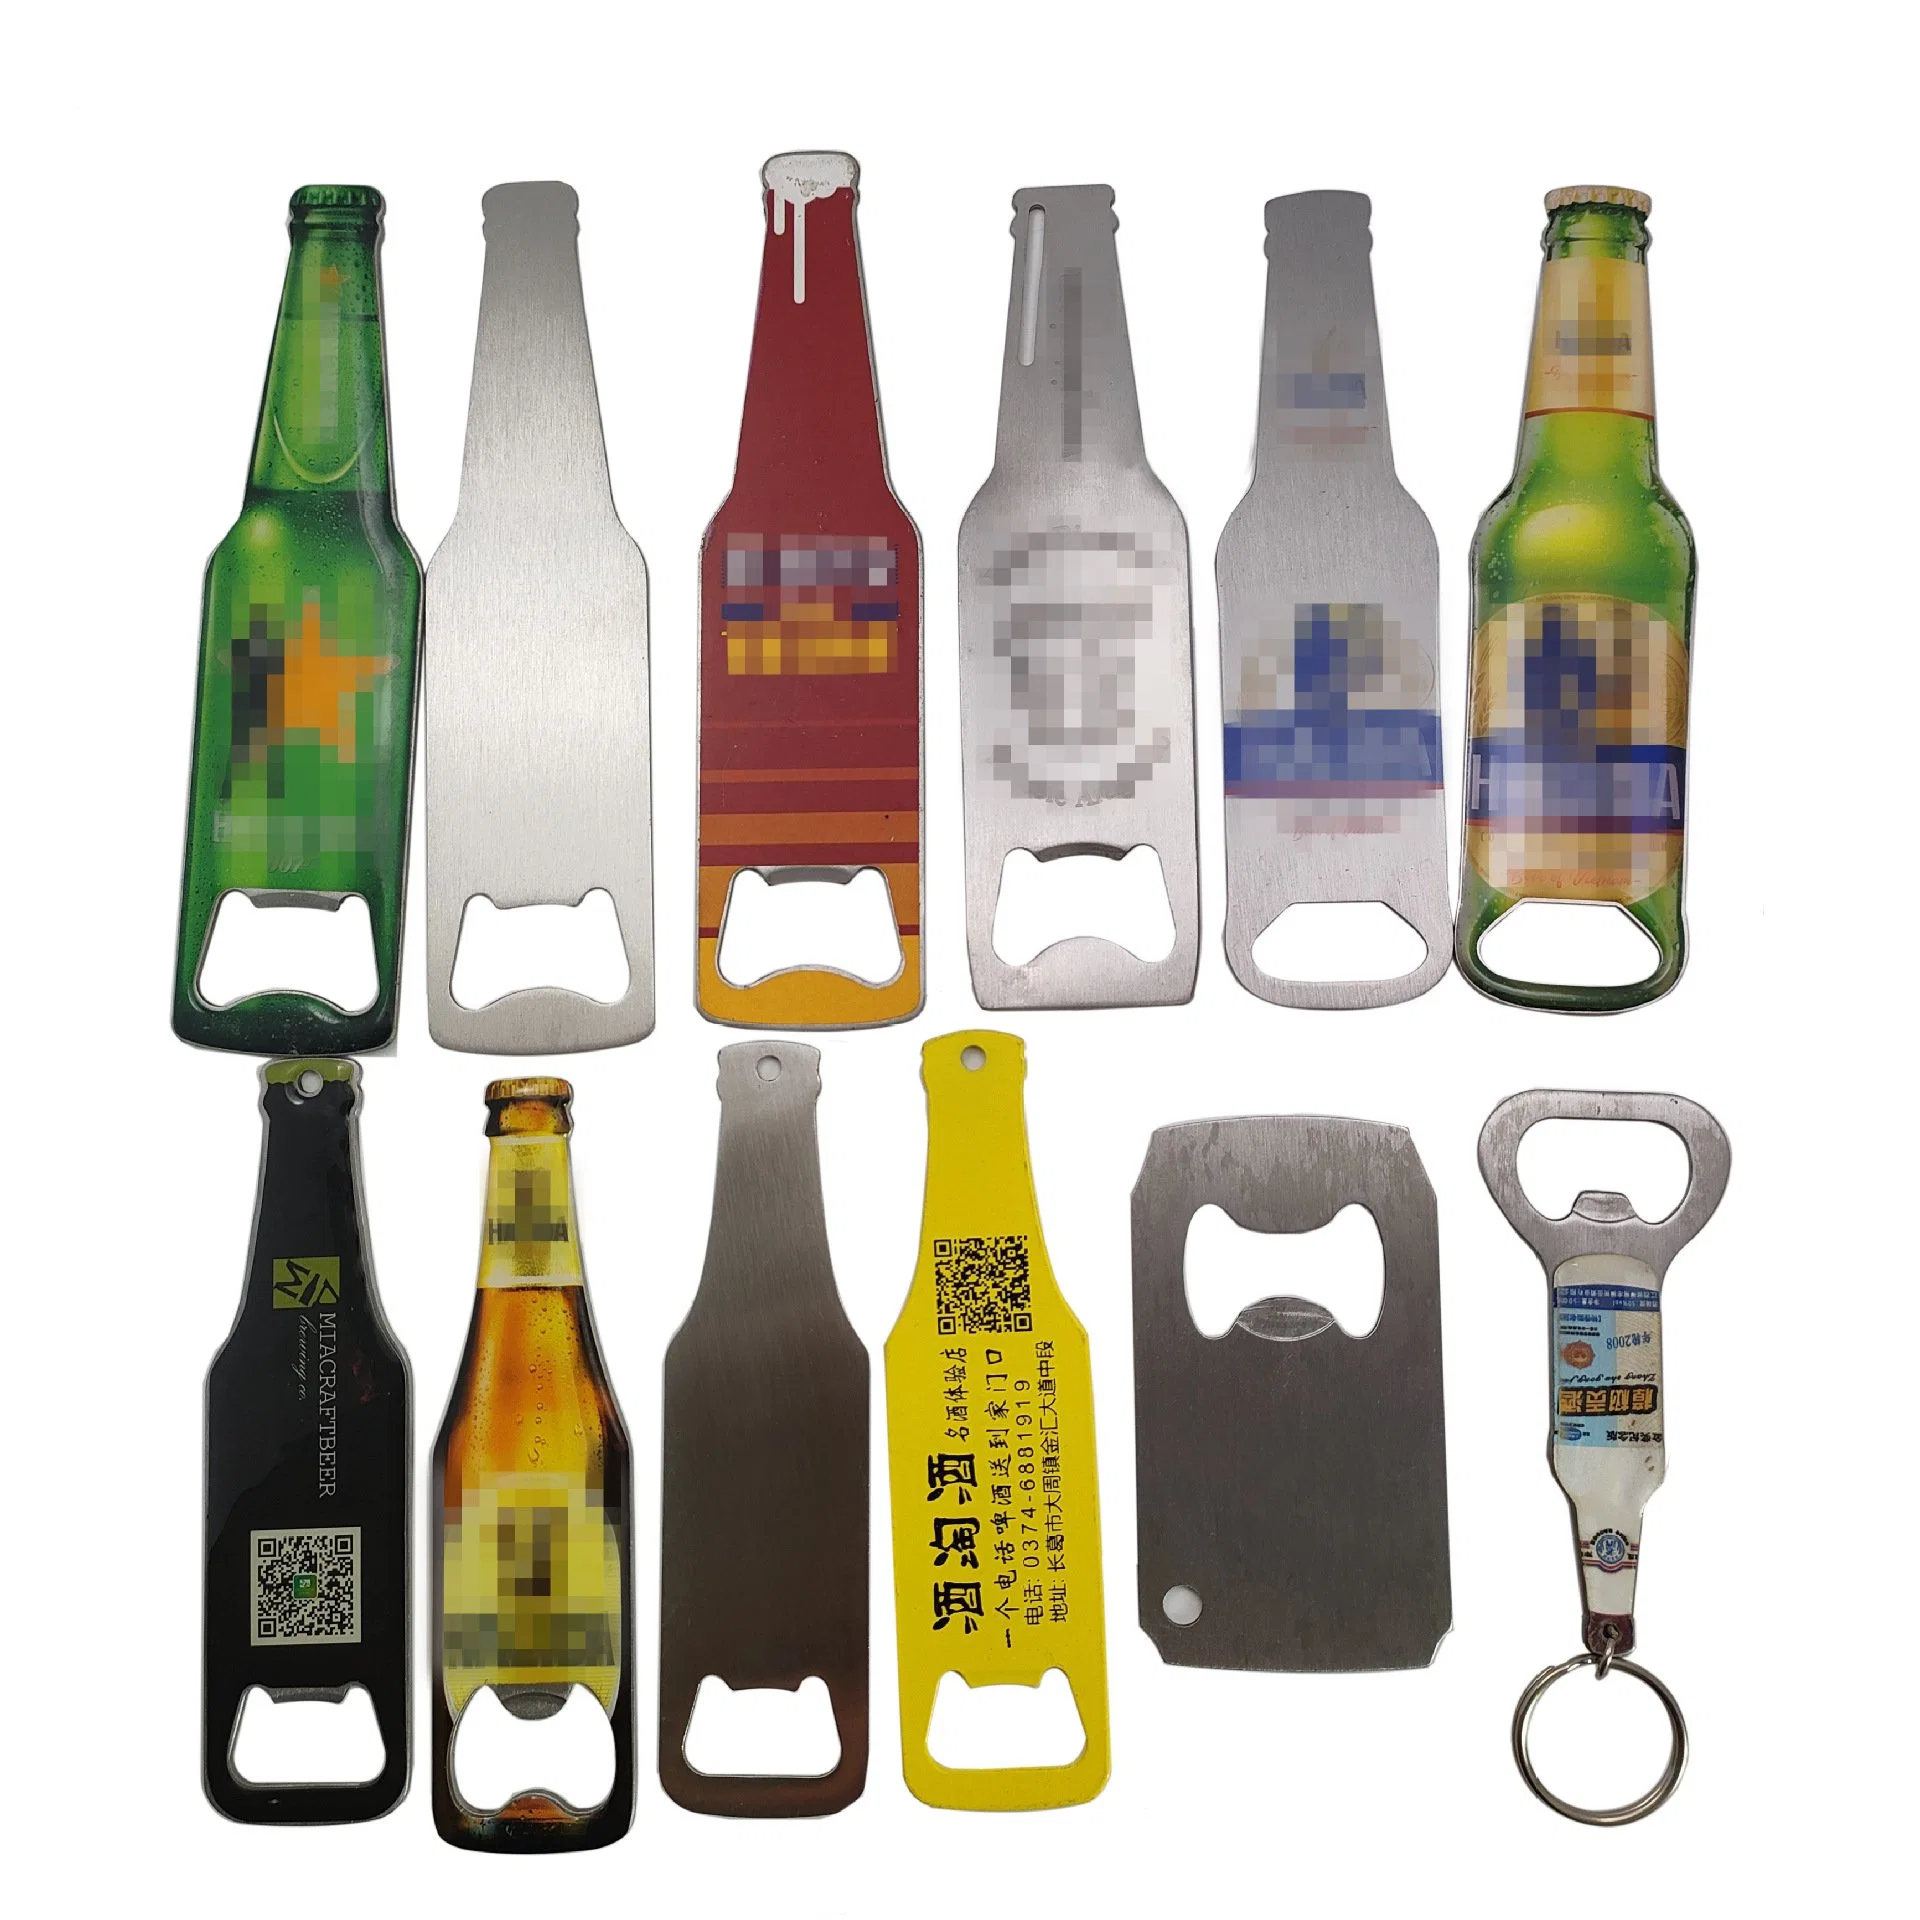 Custom печать пиво сошник, бачок форму сошник, нержавеющая сталь сошник, вино бутылок, рекламных подарков металлические сошника